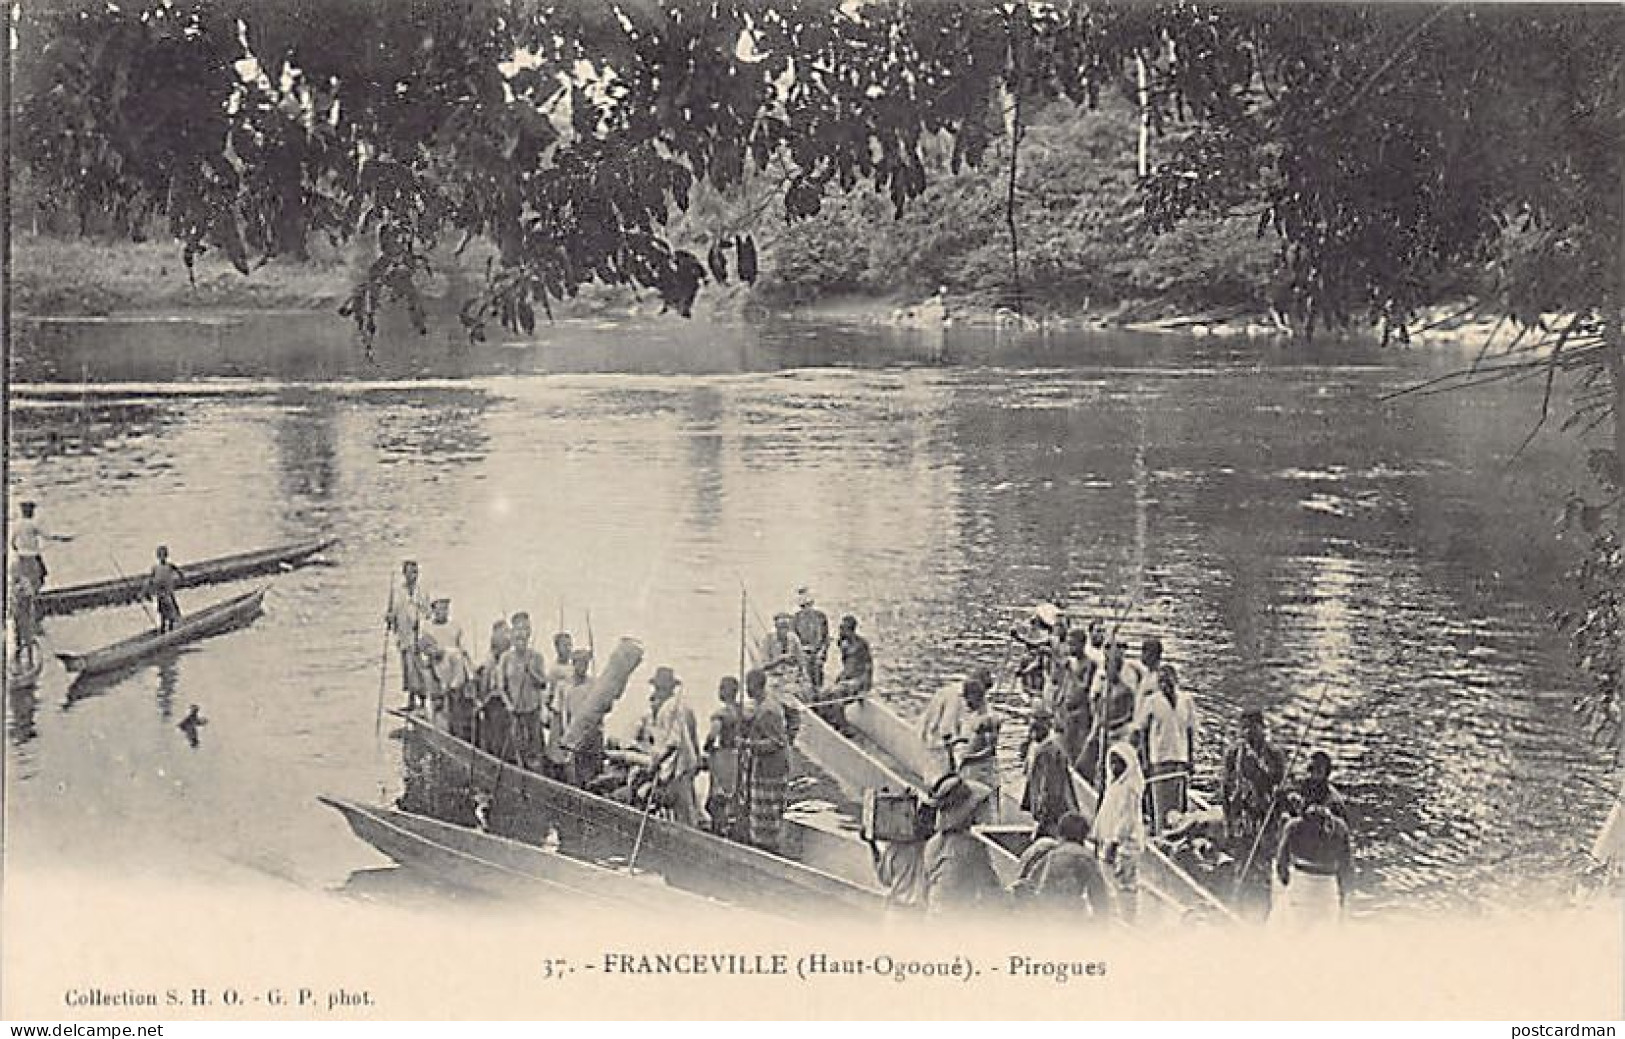 Gabon - FRANCEVILLE - Pirogues - Ed. S.H.O. - G.P. 37 - Gabon